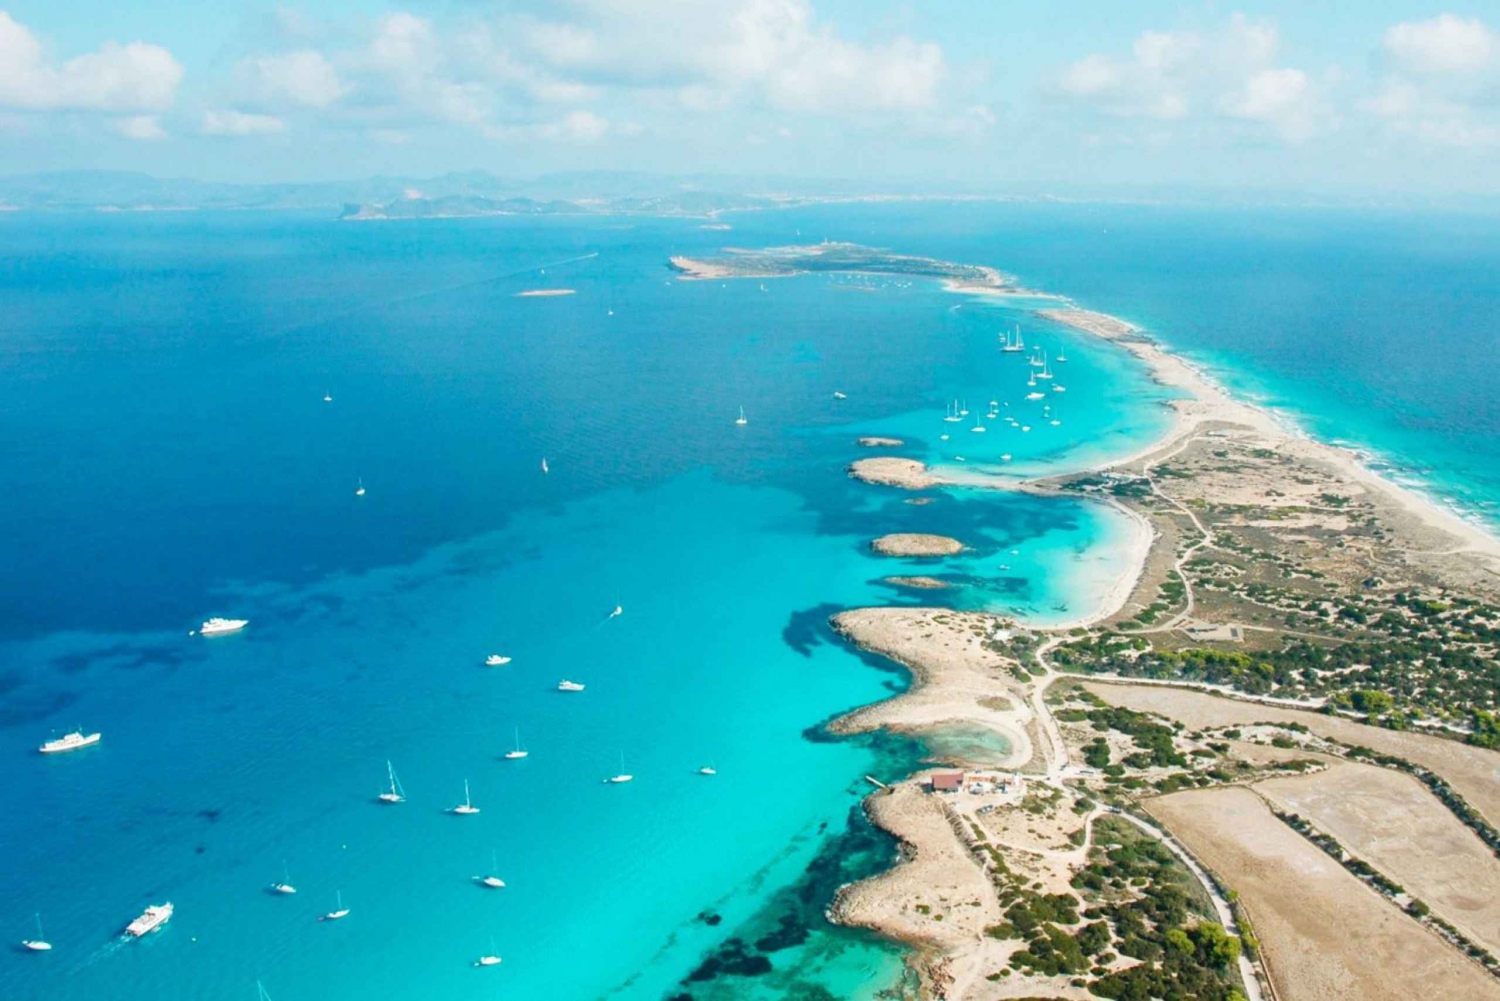 Ibiza: All-Inclusive Boat Trip to Formentera